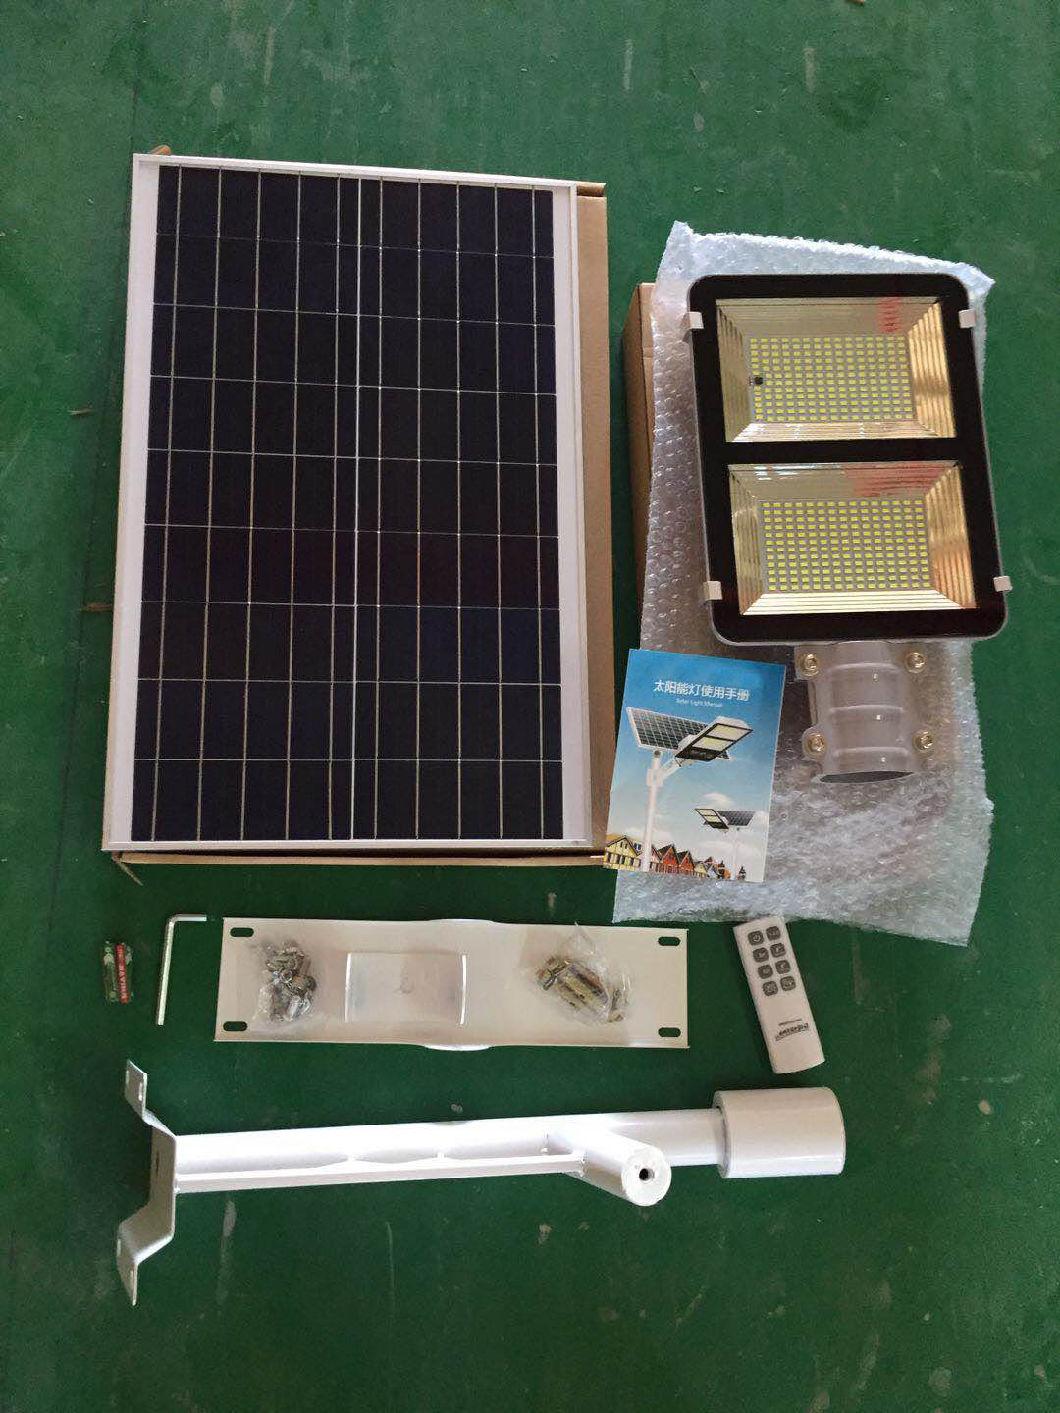 Outdoor Motion Sensor Solar Energy LED Street Lamp with Split Solar Panel